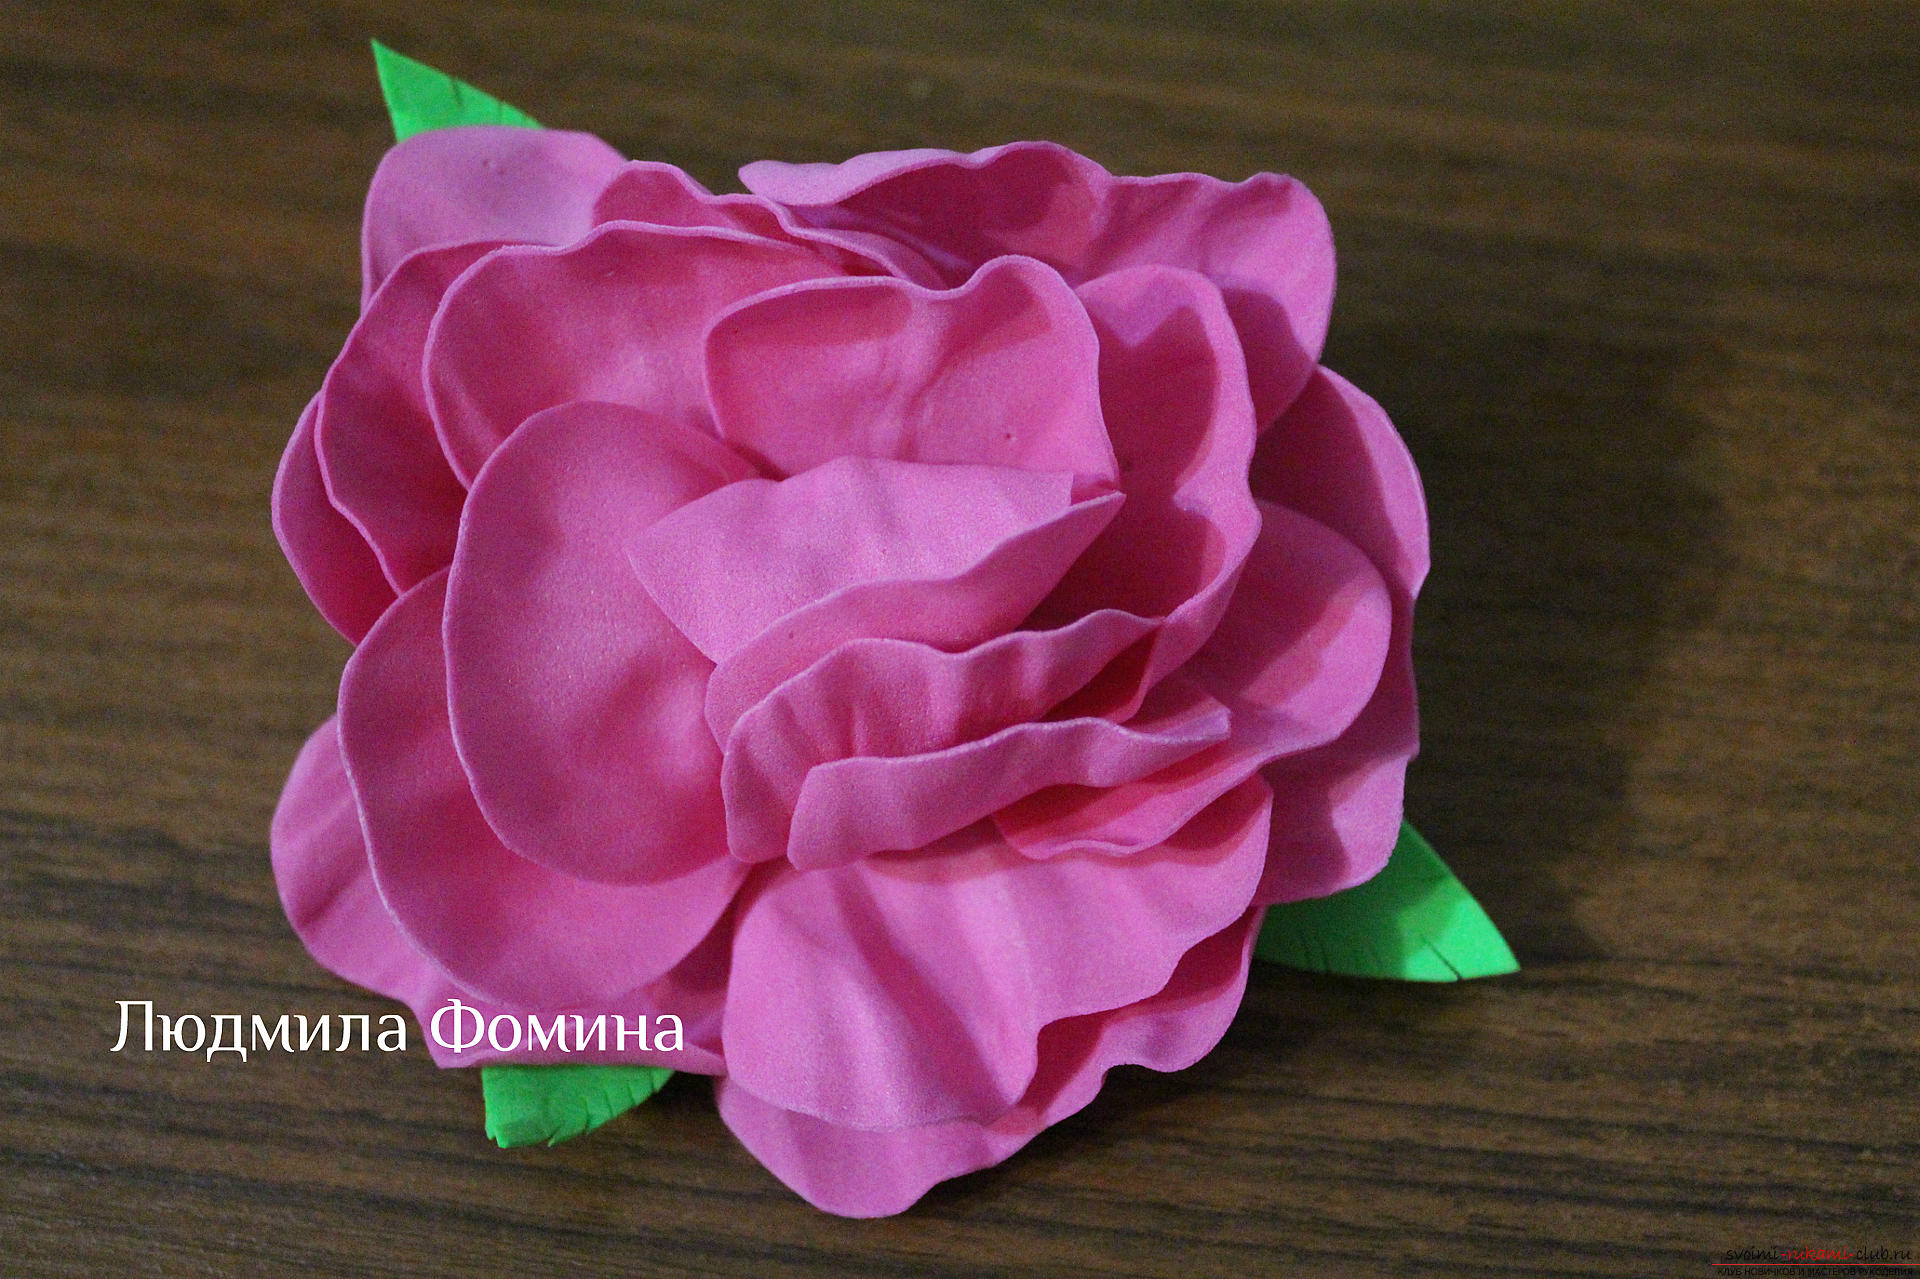 Мастер-класс по созданию цветов научит делать своими руками розу из фоамирана или из кожи. Фото №1